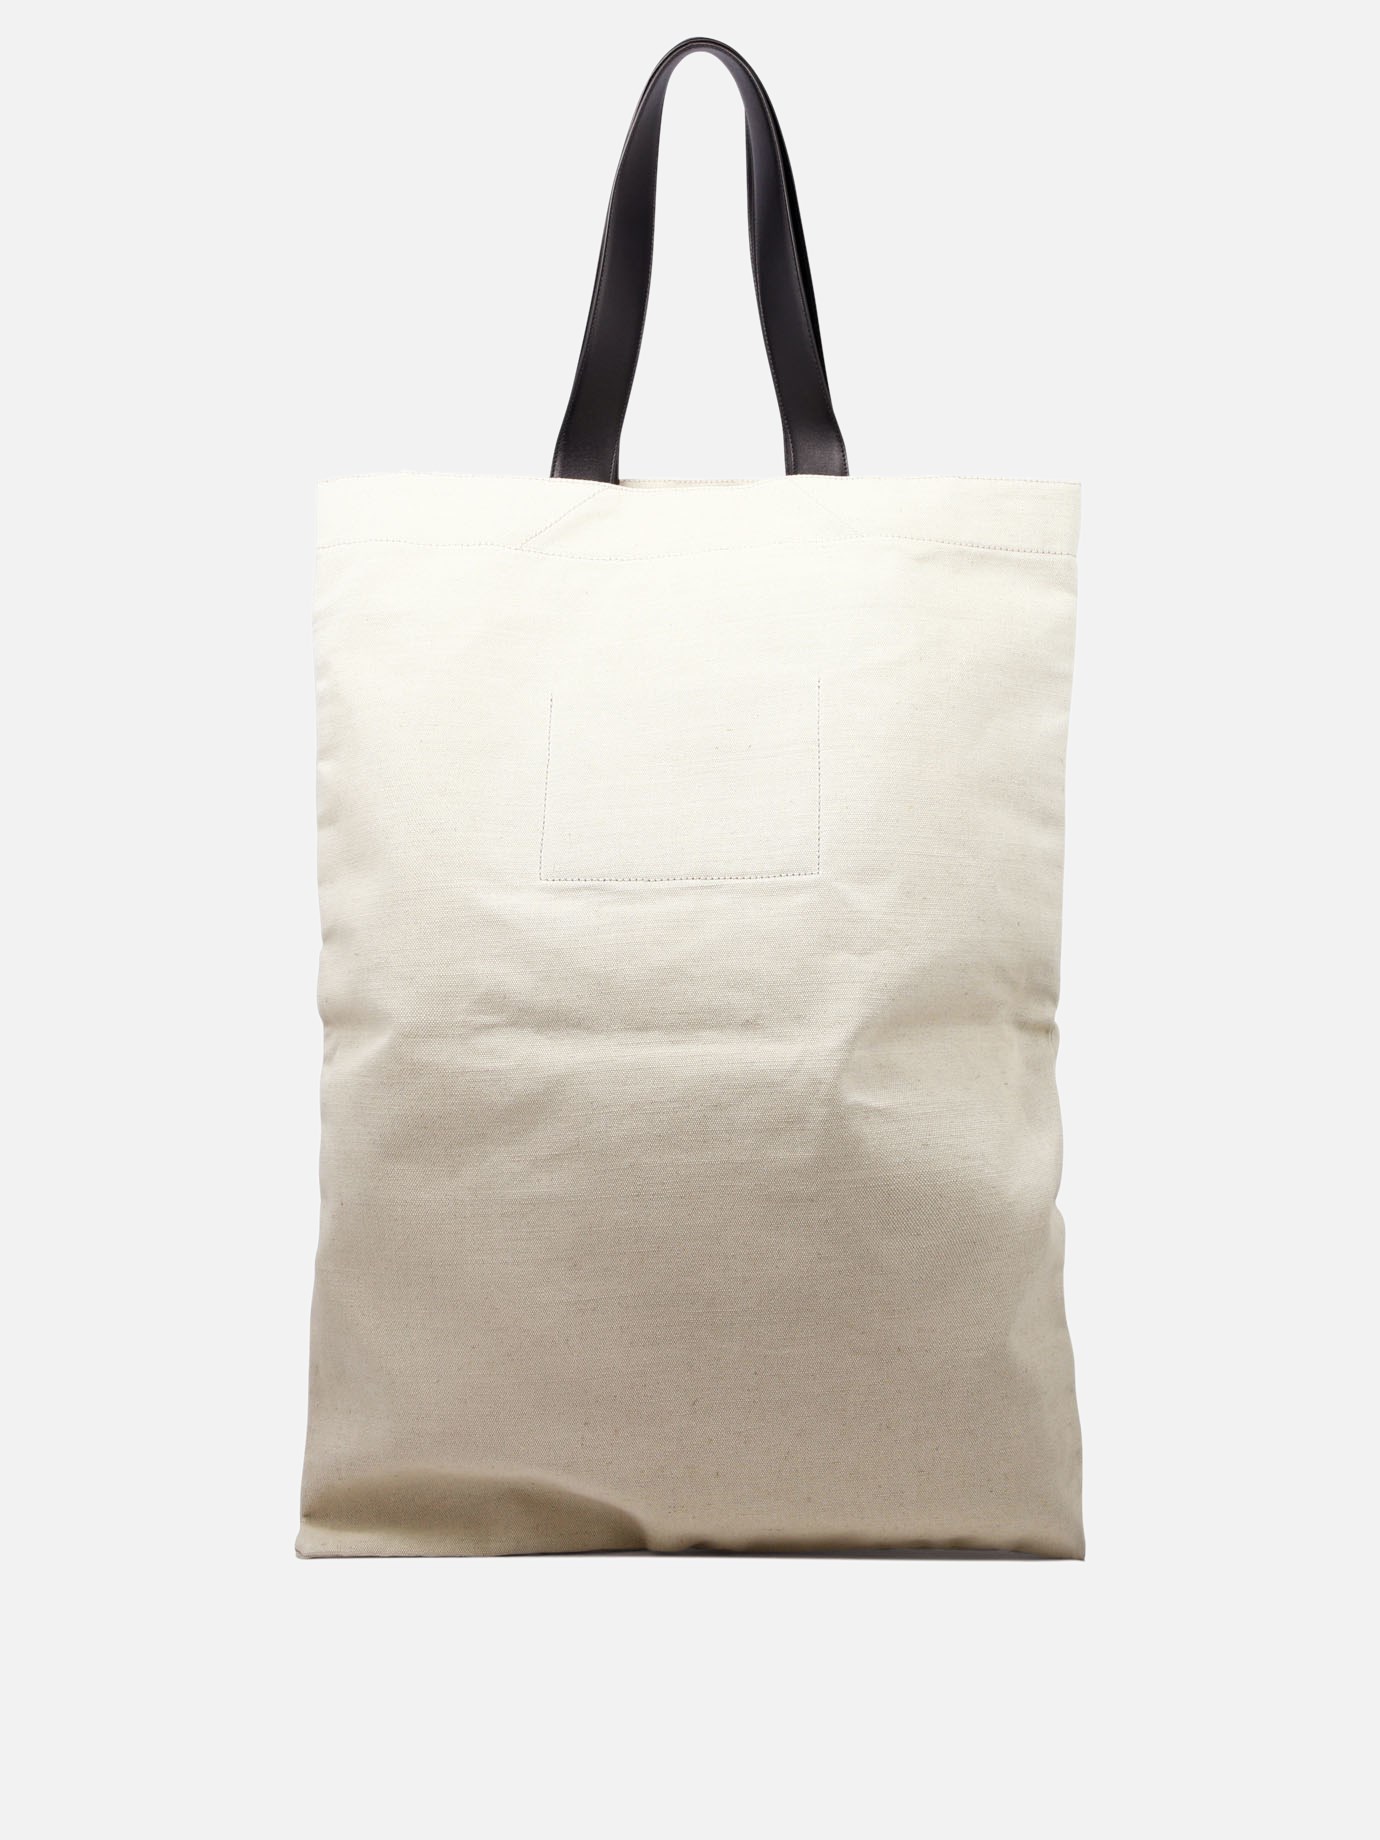  Large  shoulder bag by Jil Sander